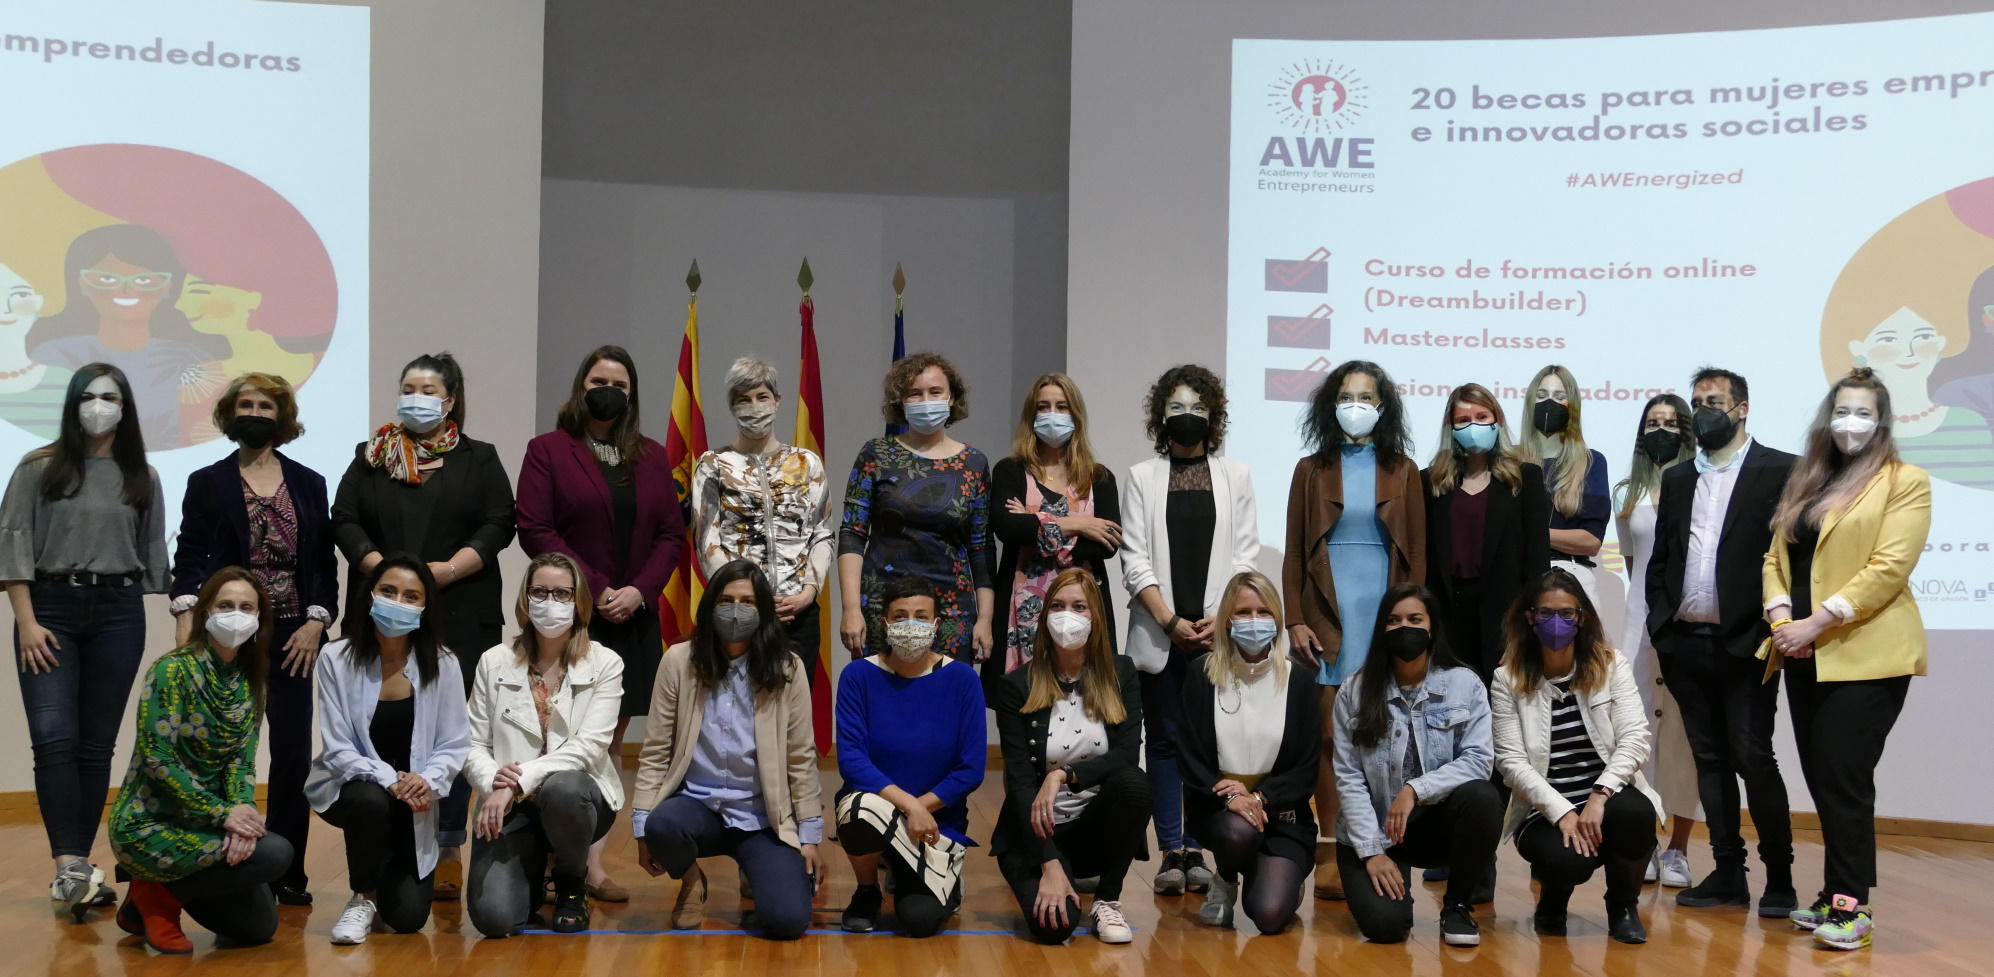 Veinte mujeres de Aragón inician una formación empresarial financiada por Estados Unidos